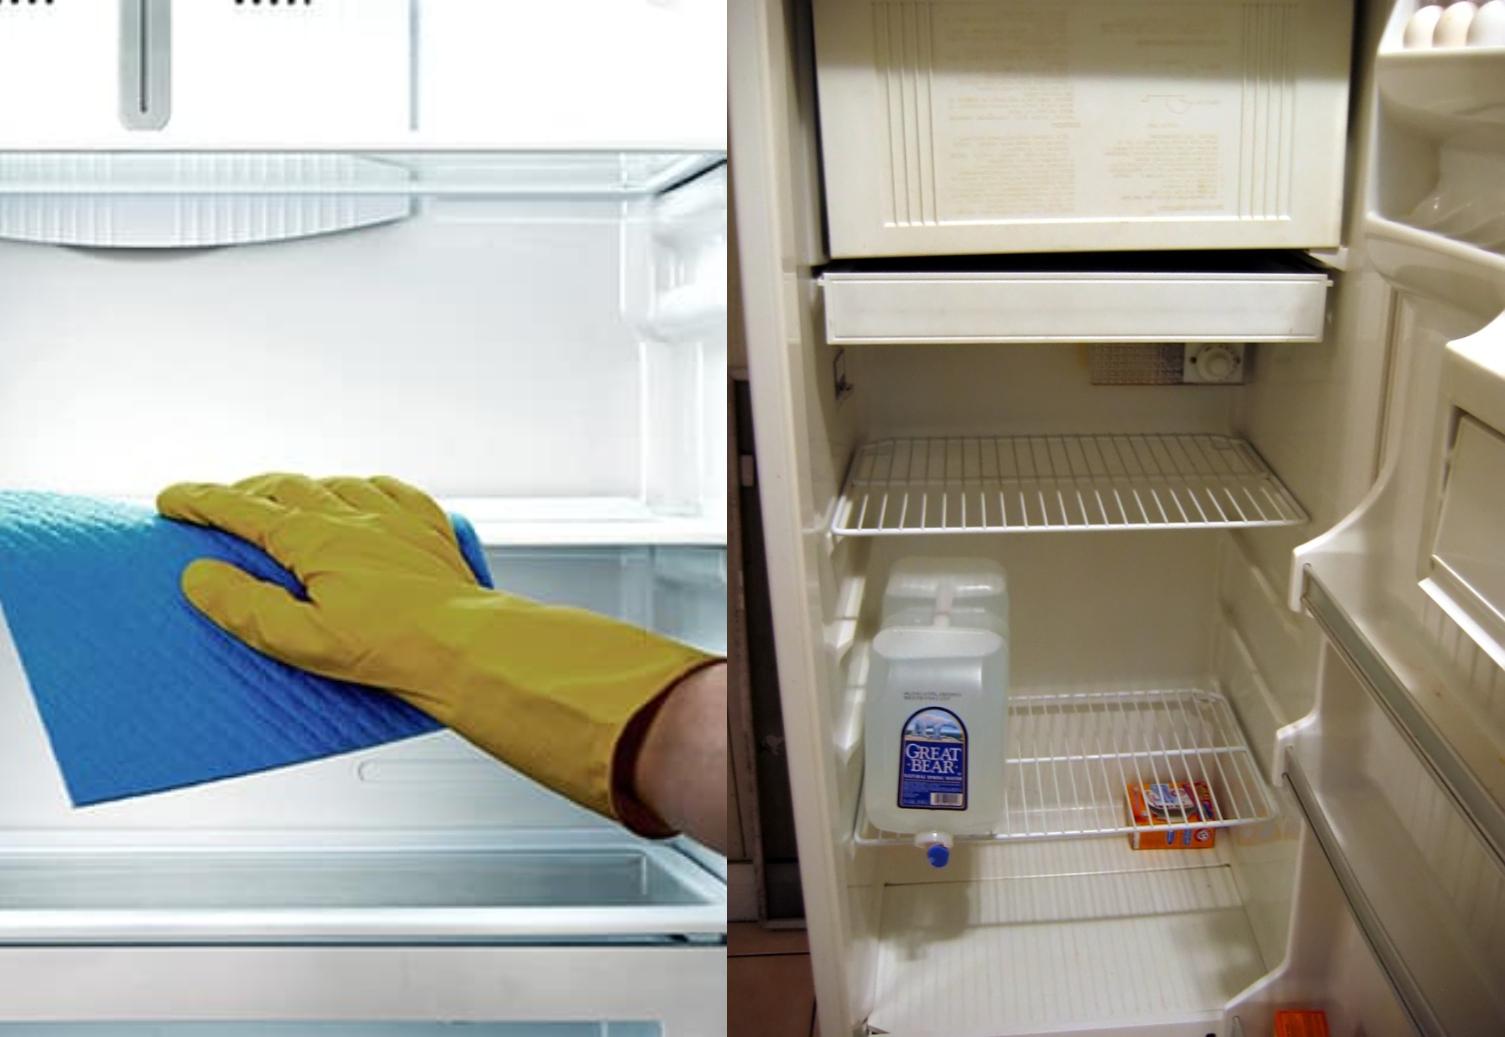 Βρωμάει το ψυγείο σας: 7 φυσικοί τρόποι για να μην βρωμάει